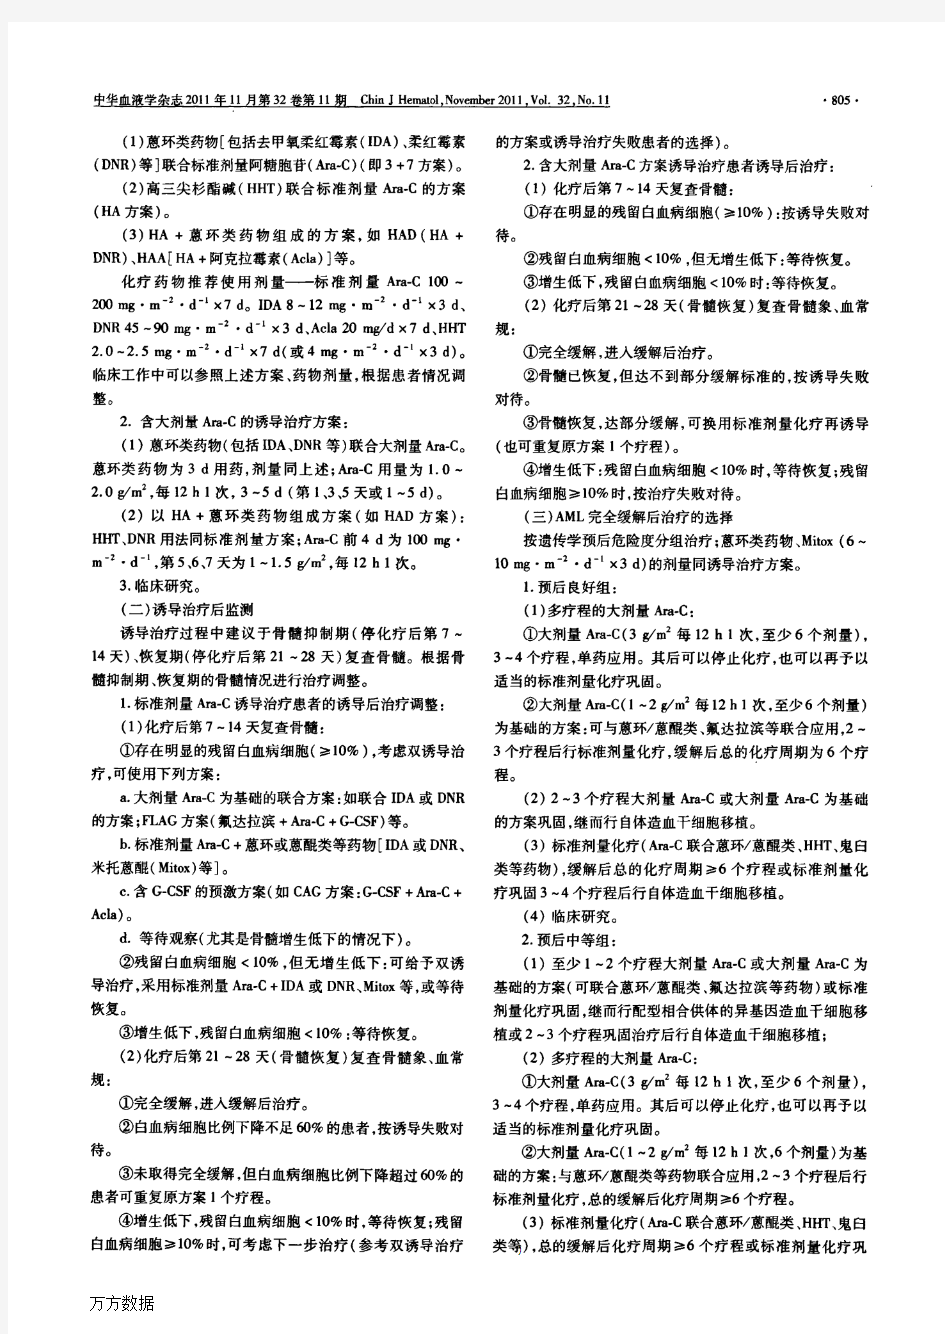 1.成人急性髓系白血病(非急性早幼粒细胞白血病)中国诊疗指南(2011年版)